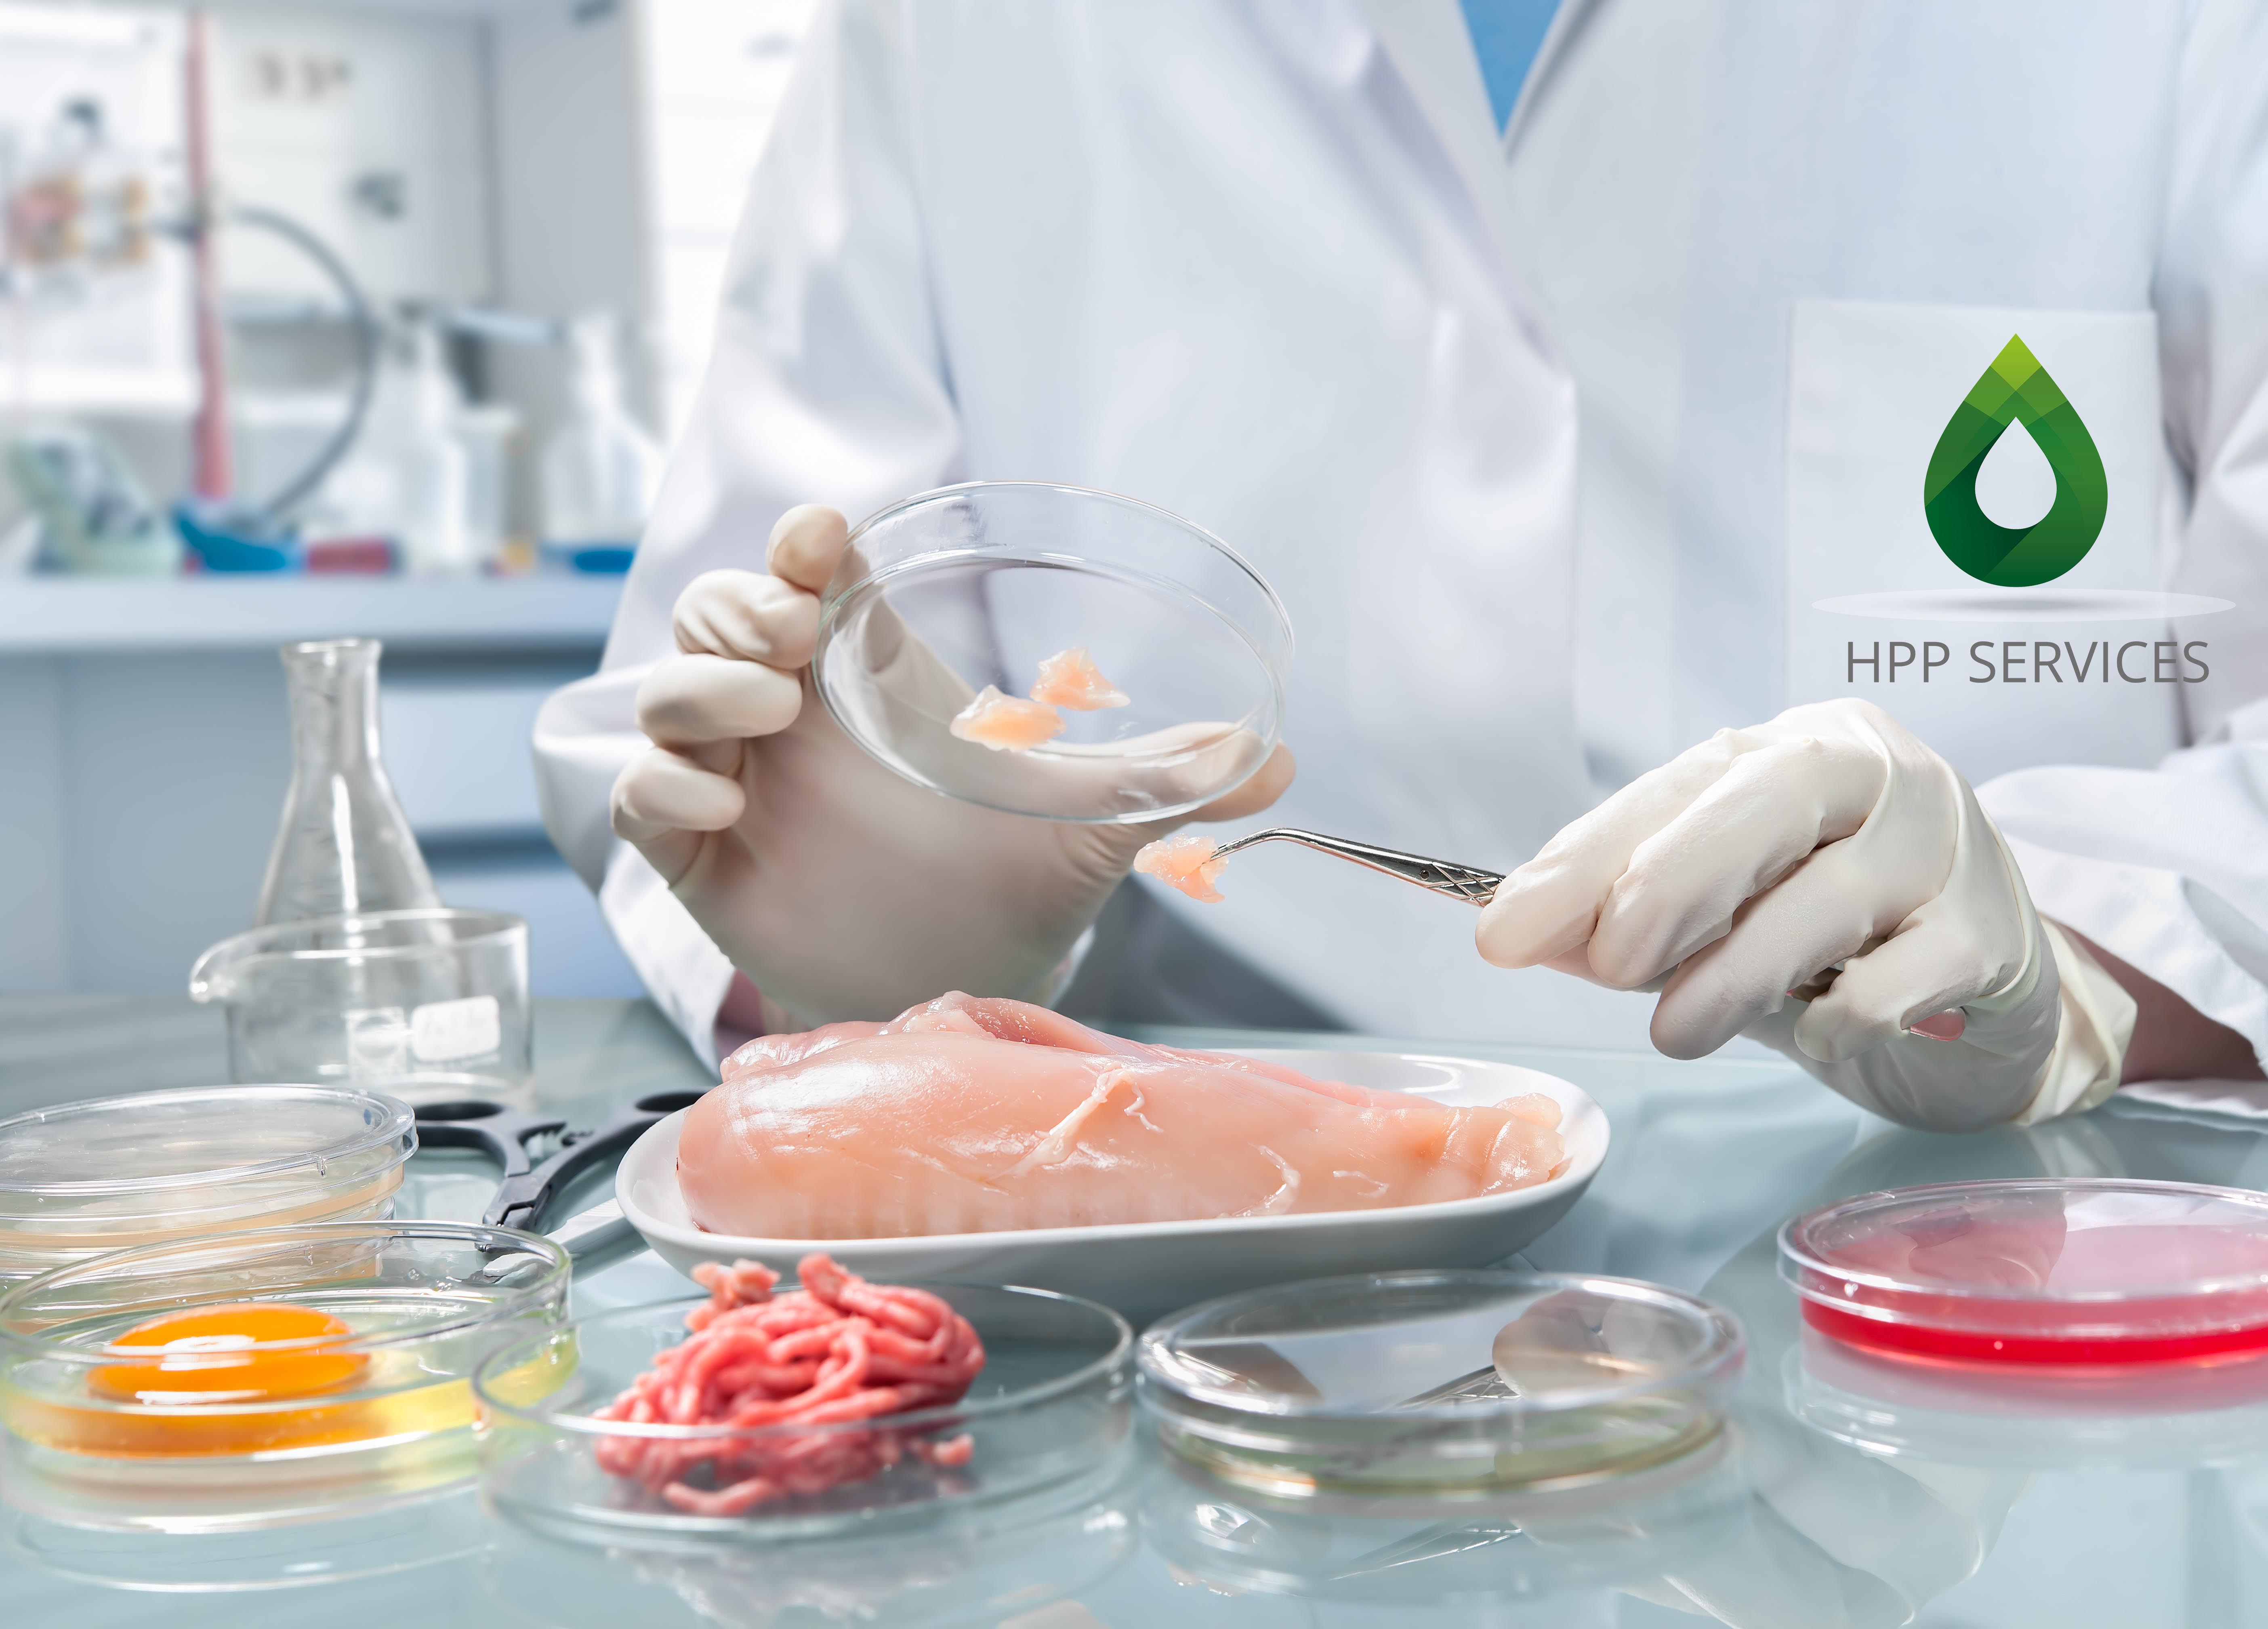 Тест качества лаборатория. Санитарная экспертиза пищевых продуктов. Санитарно микробиологическое исследование мяса и мясных продуктов. Лаборатория пищевых продуктов. Ветеринарно-санитарная экспертиза.